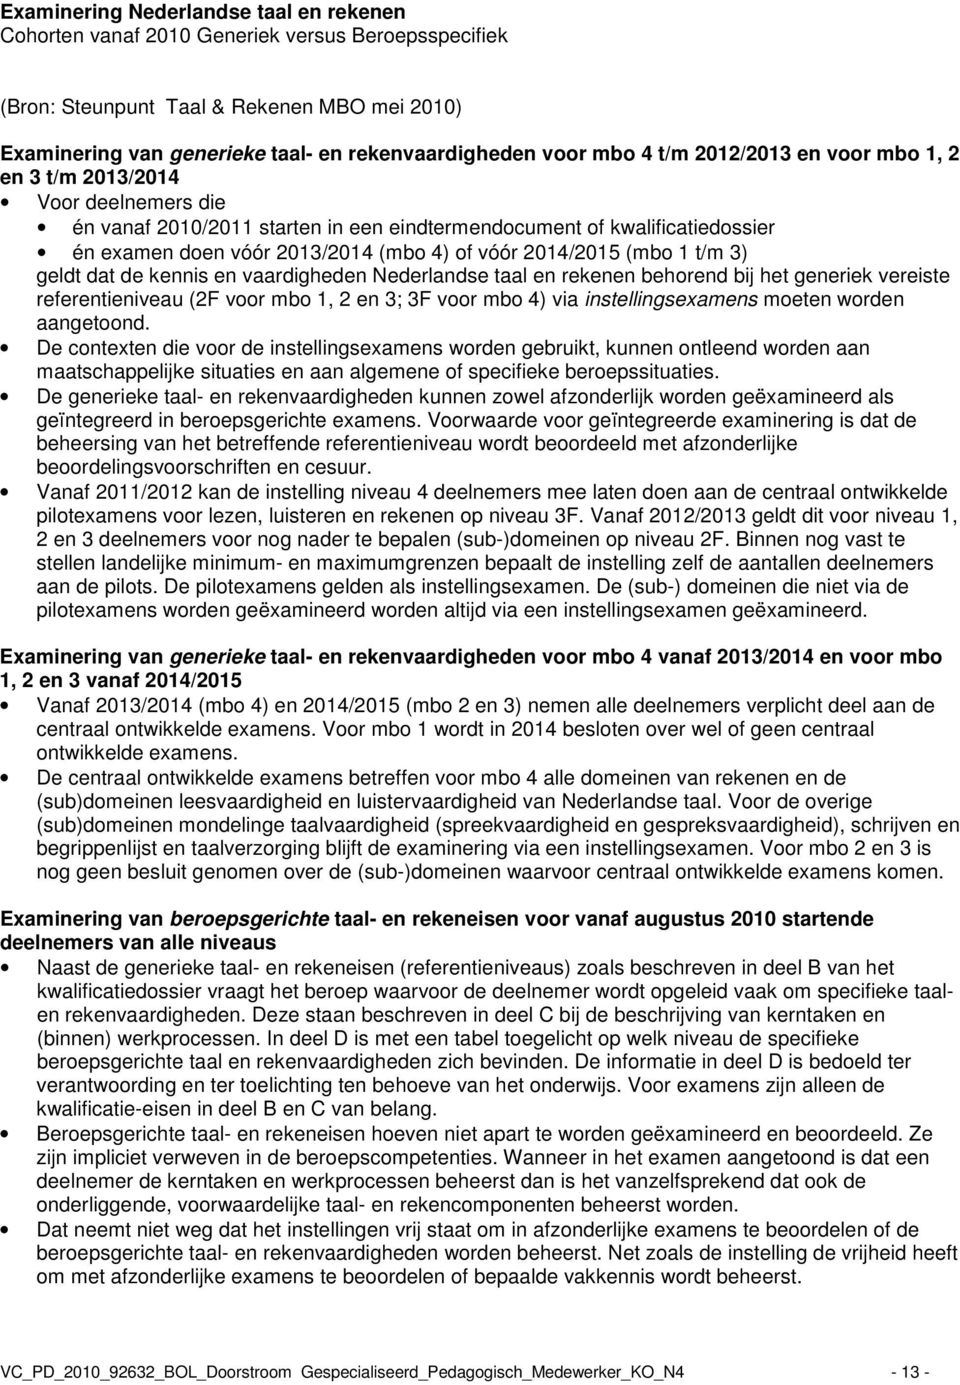 2014/2015 (mbo 1 t/m 3) geldt dat de kennis en vaardigheden Nederlandse taal en rekenen behorend bij het generiek vereiste referentieniveau (2F voor mbo 1, 2 en 3; 3F voor mbo 4) via